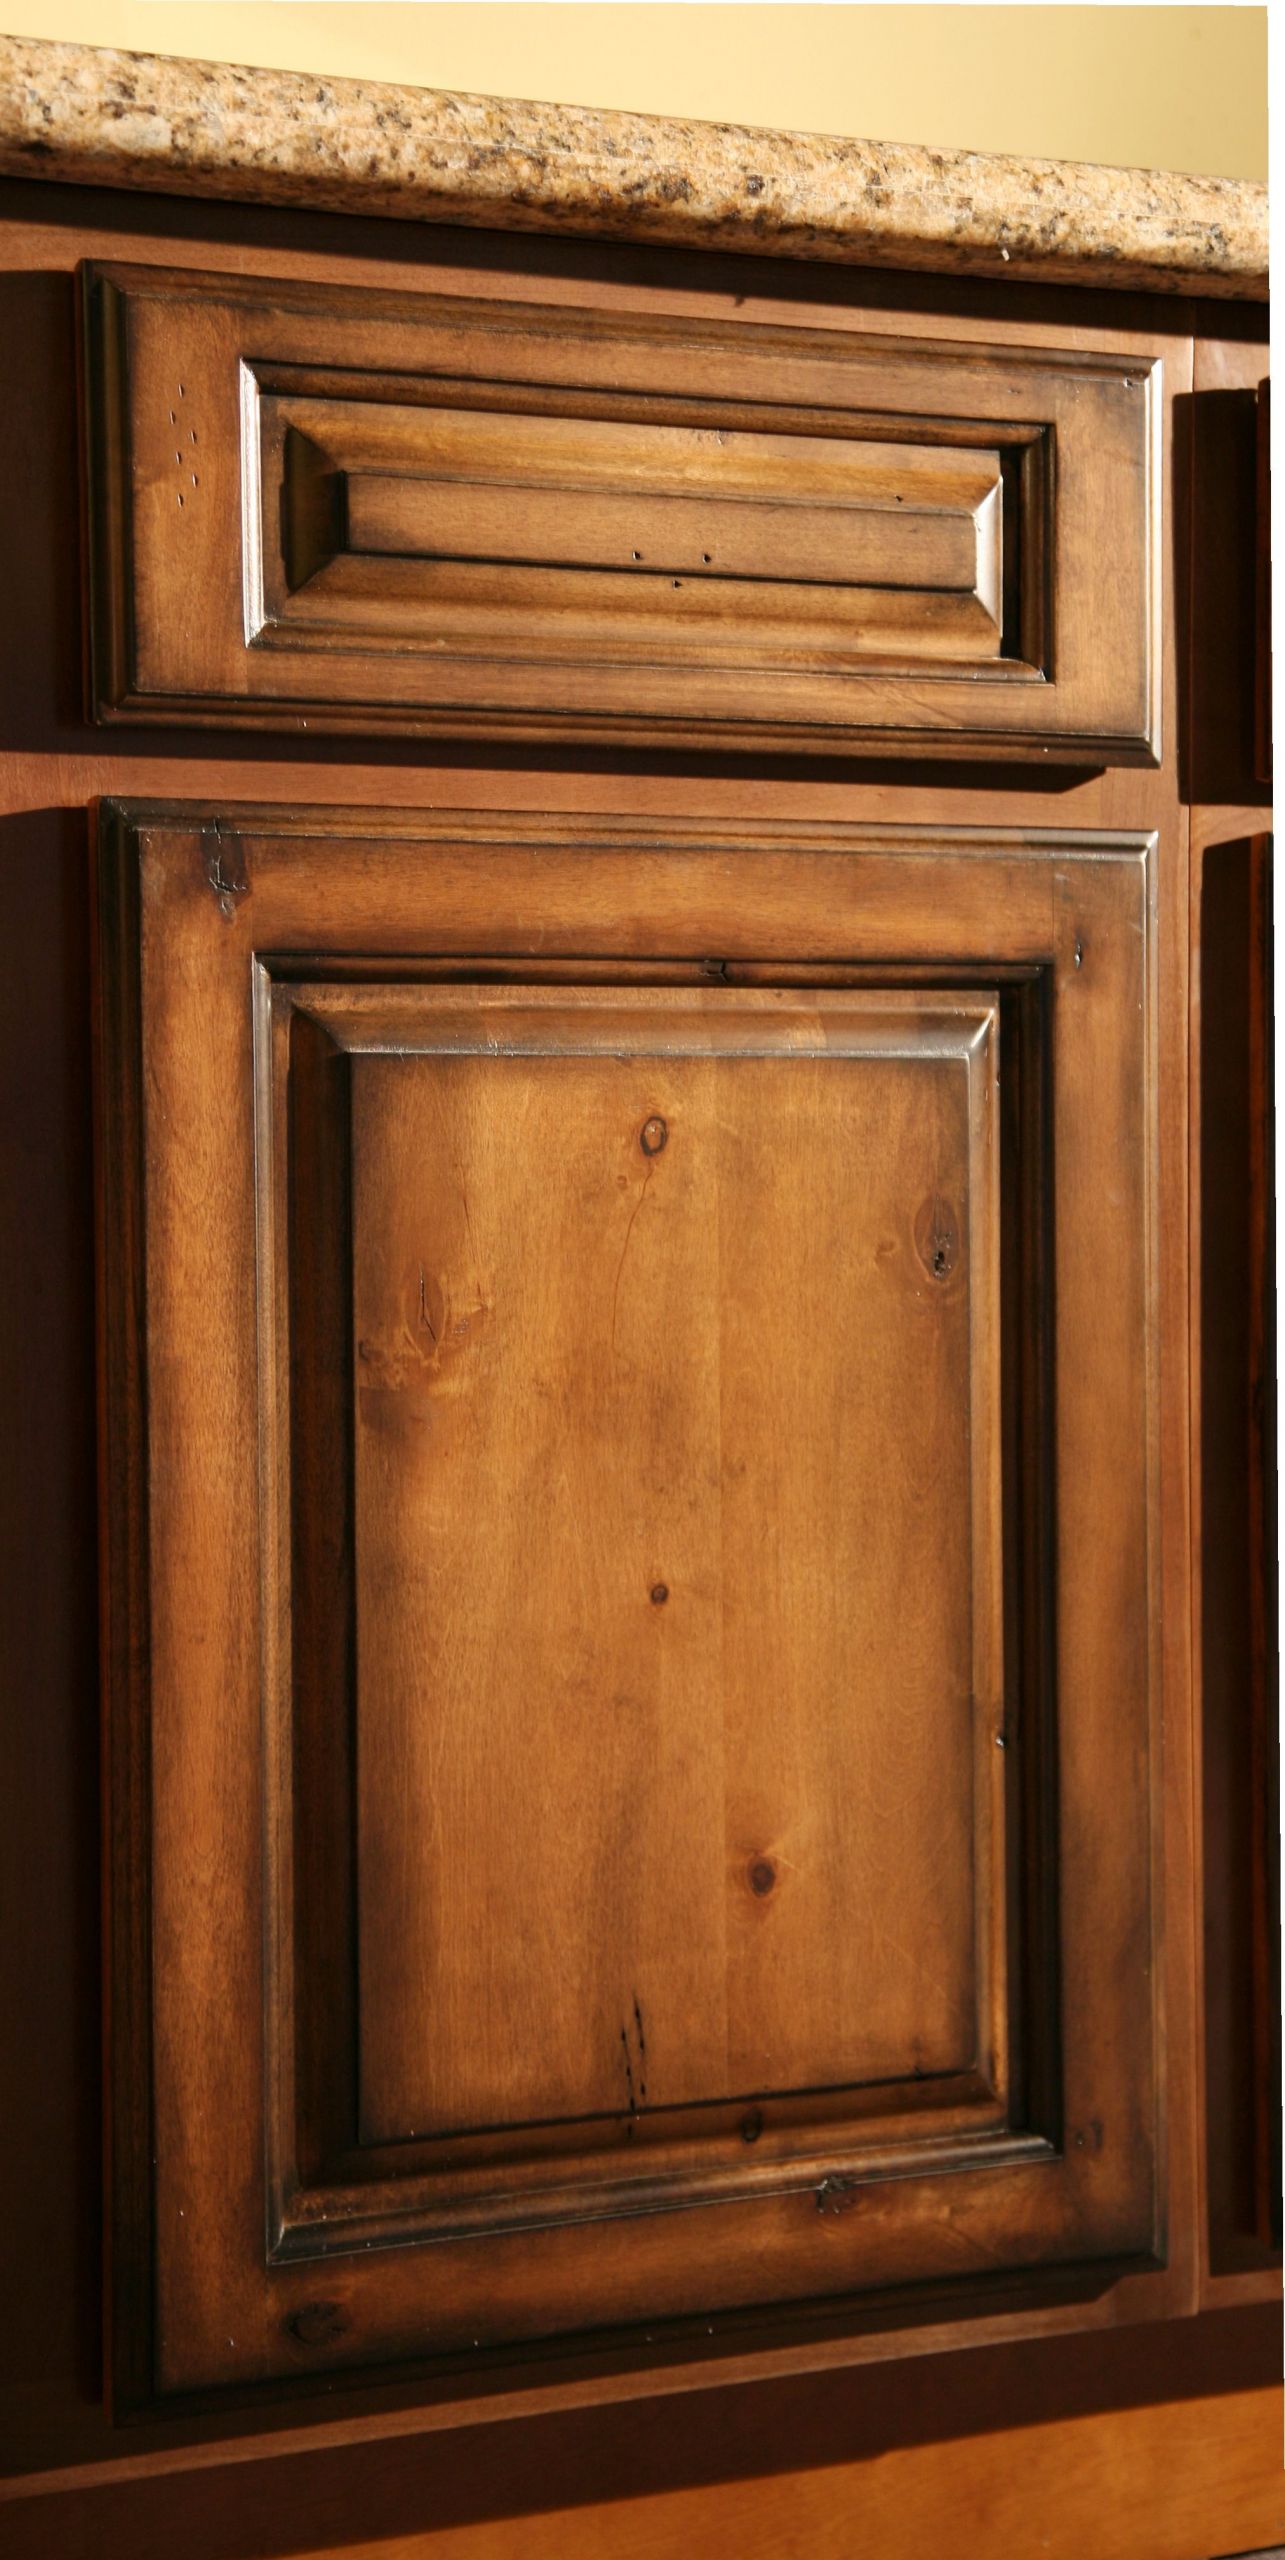 Rustic Kitchen Cabinet Doors
 Pecan Maple Glaze Kitchen Cabinets Rustic Finish Sample